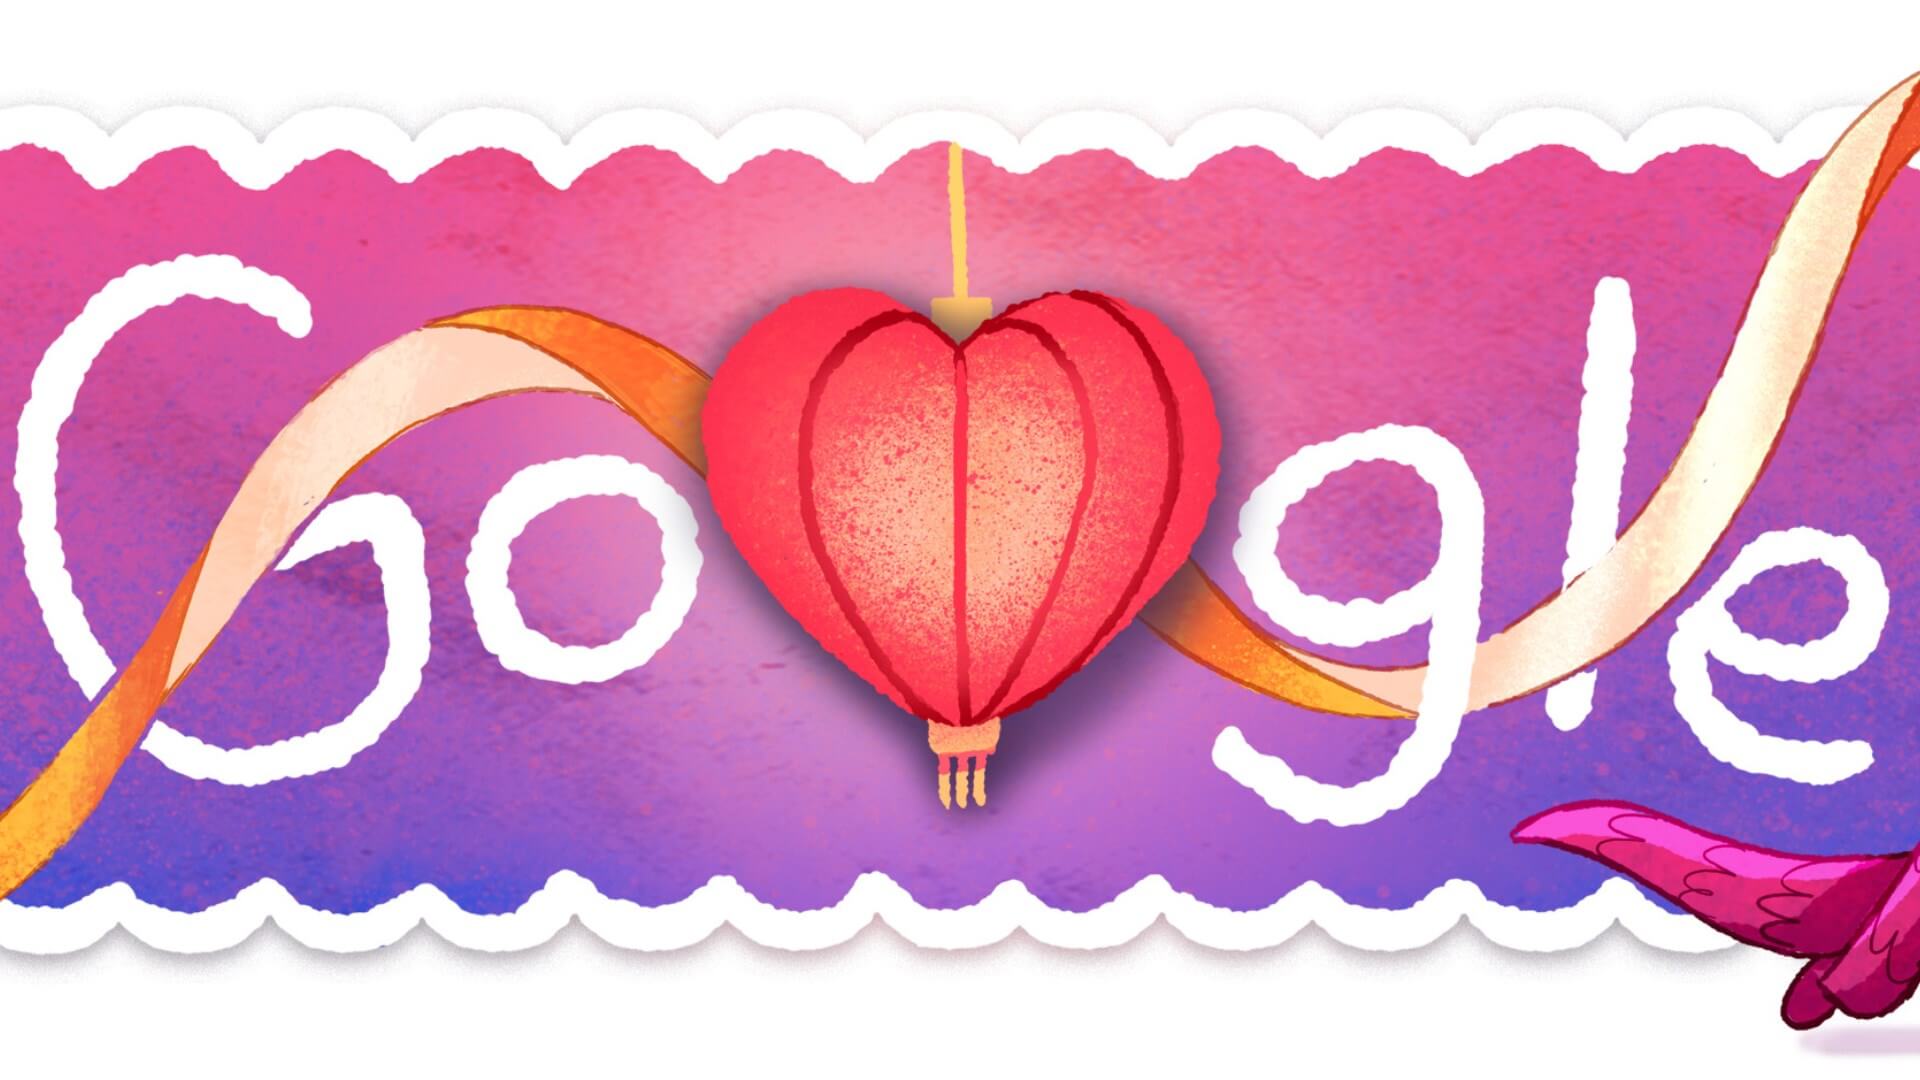 Google представила браузерную игру с влюблёнными хомячками в честь Дня святого Валентина